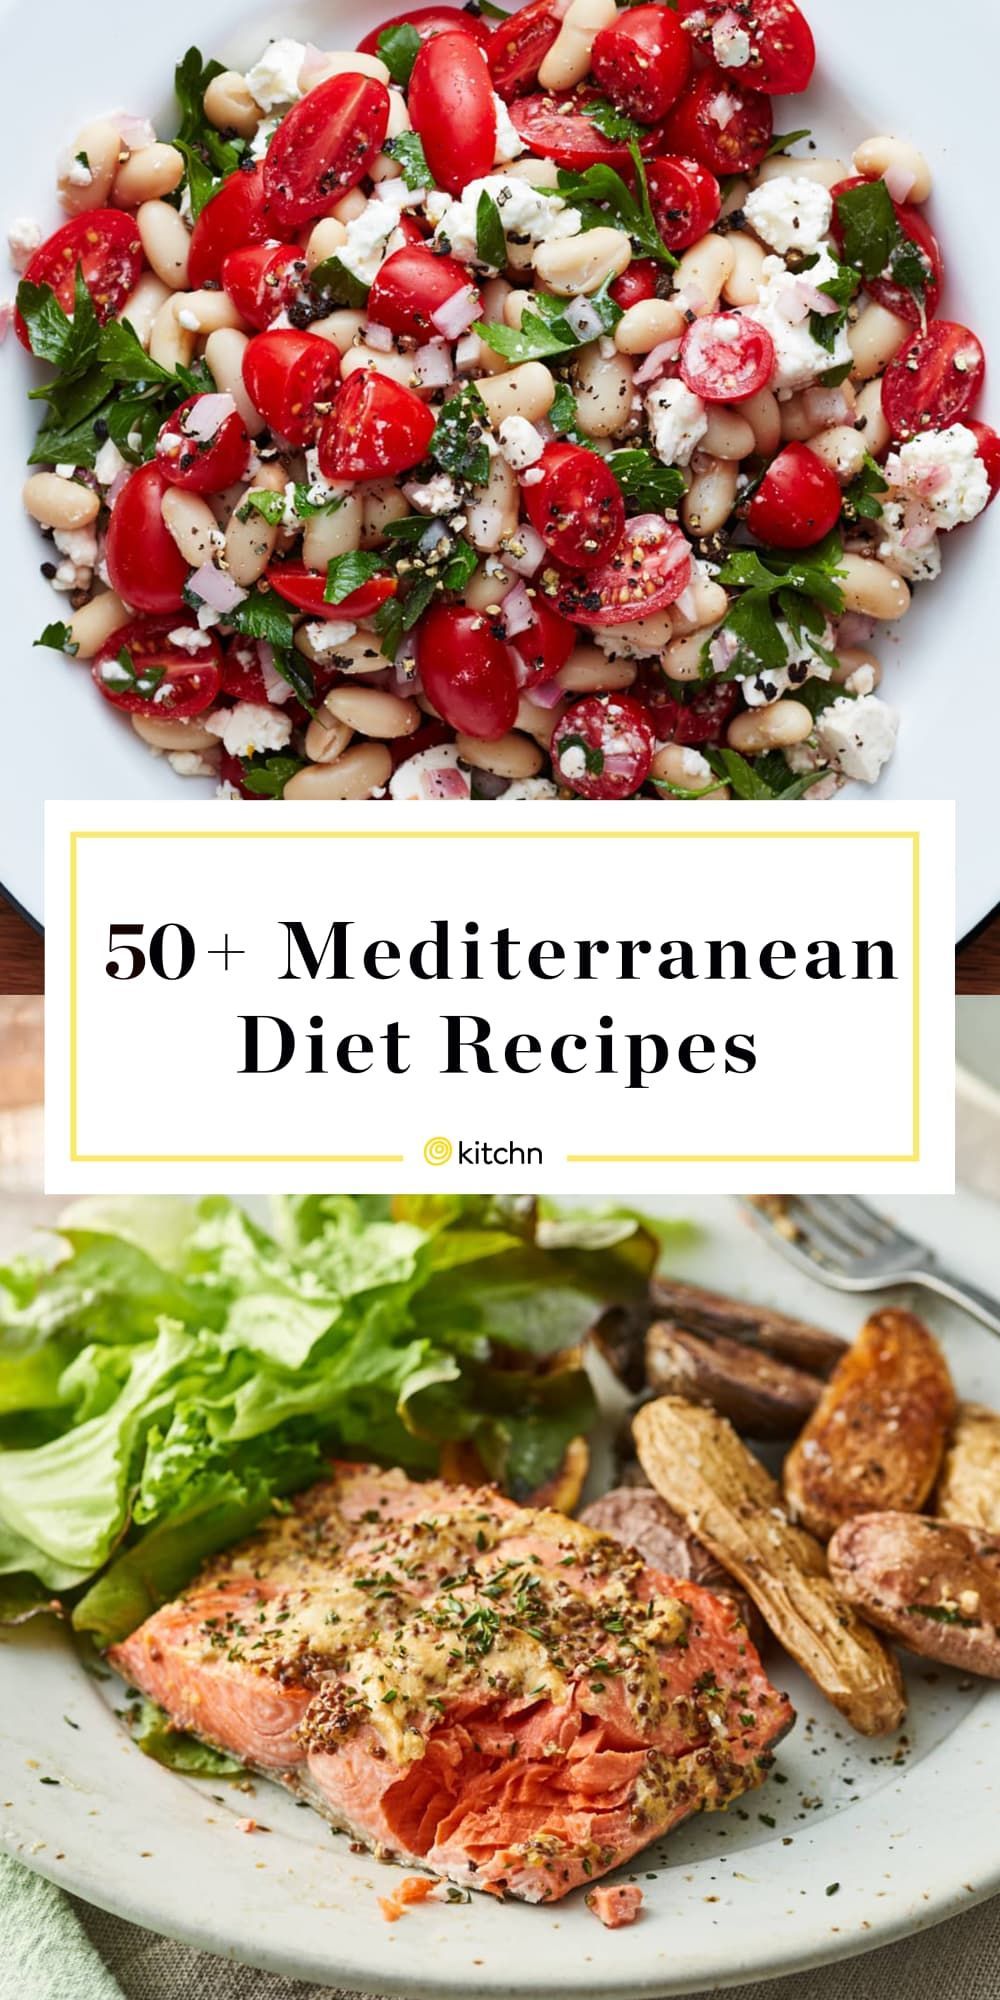 13 diet Recipes menu ideas